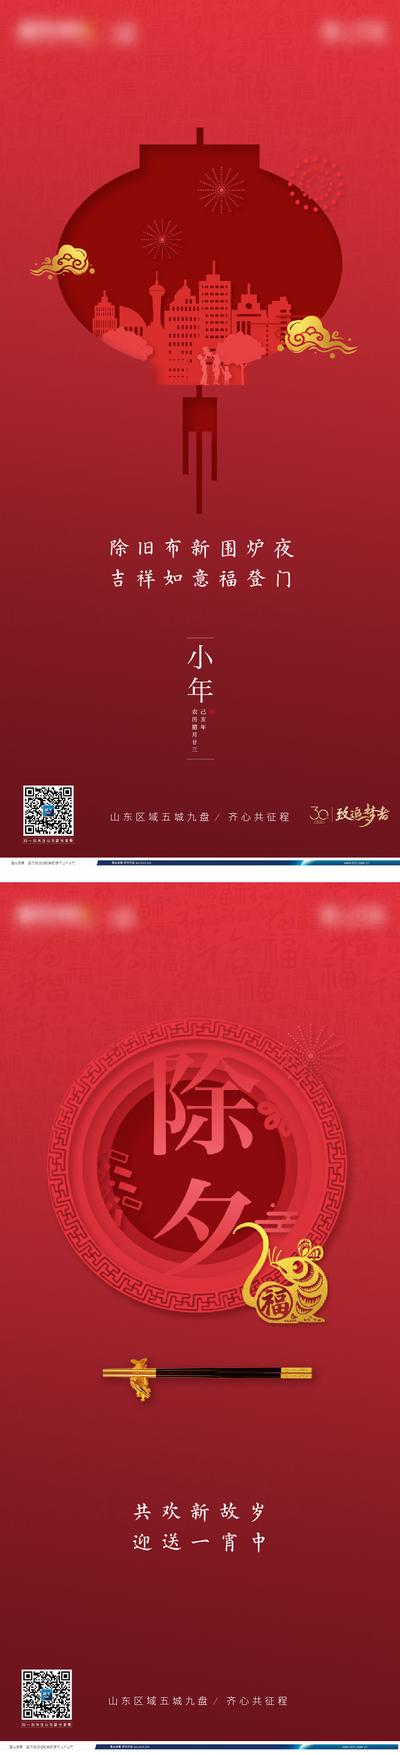 南门网 海报 房地产 中国传统节日 小年 除夕 剪纸 灯笼 筷子